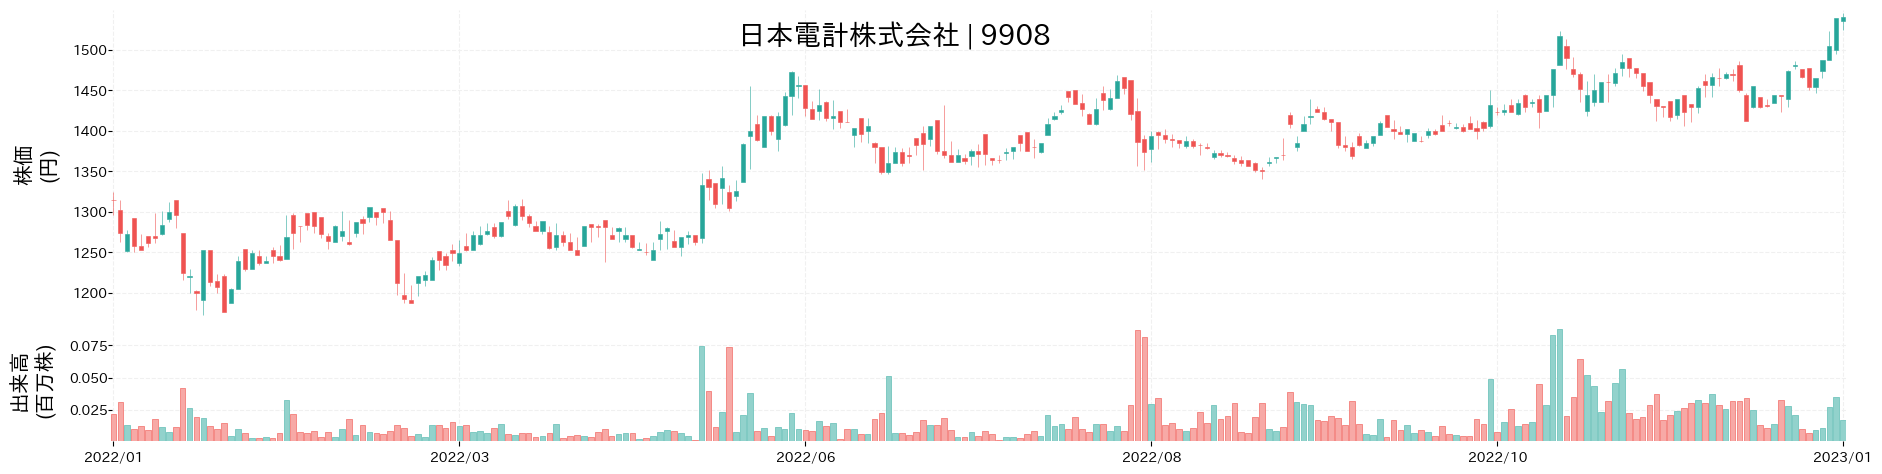 日本電計の株価推移(2022)